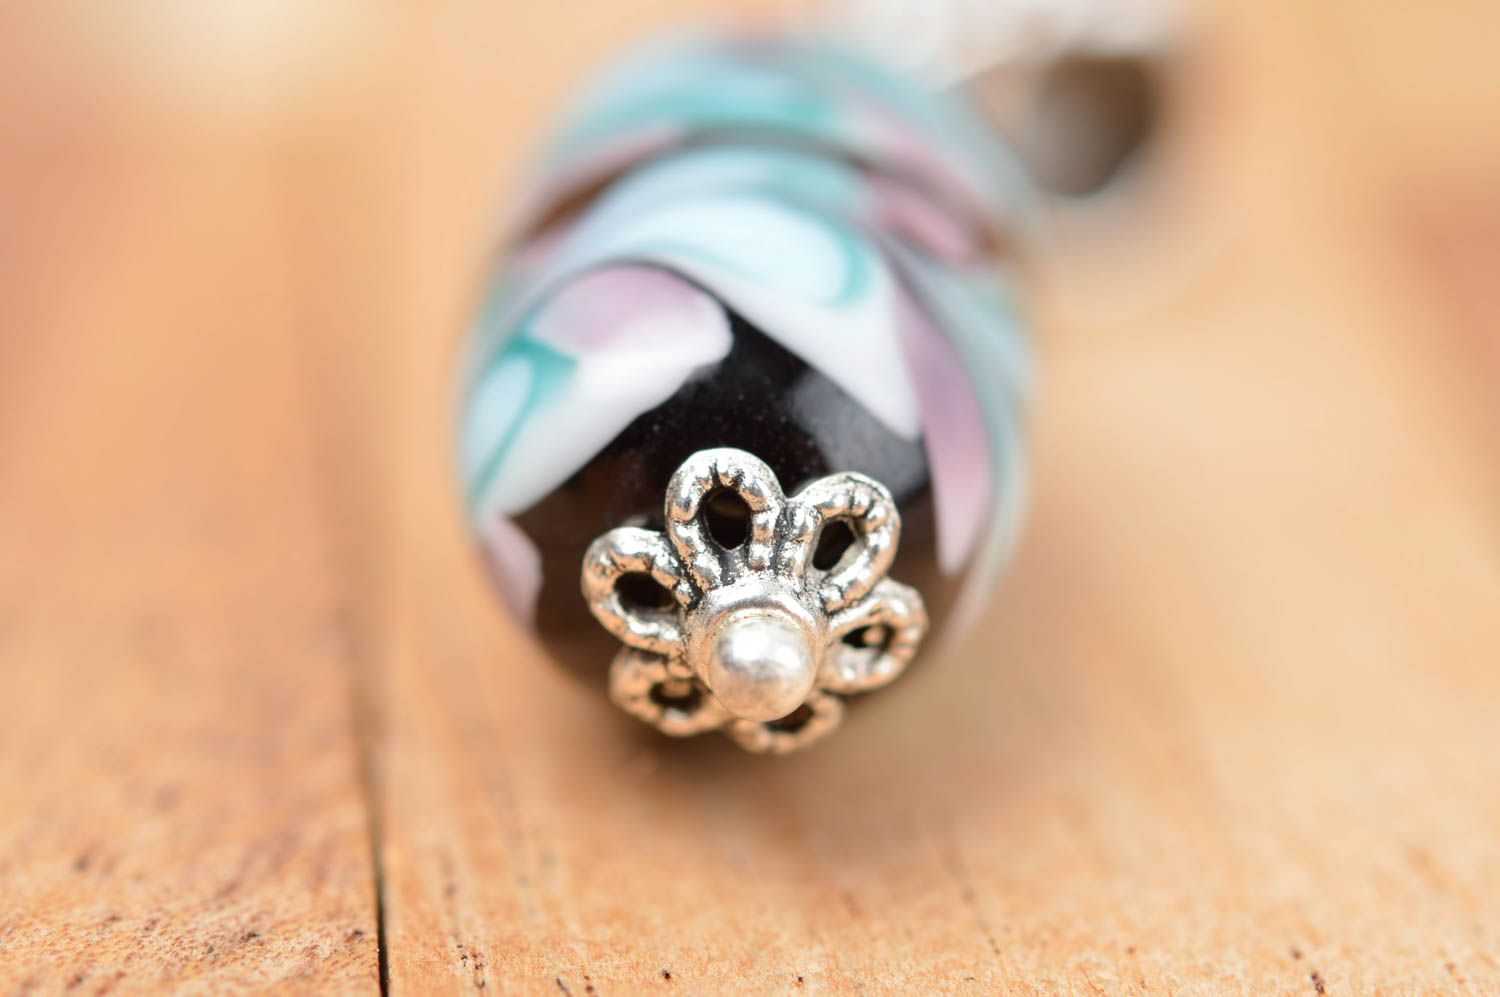 Handmade elegant glass pendant designer female pendant cute gift for her photo 4